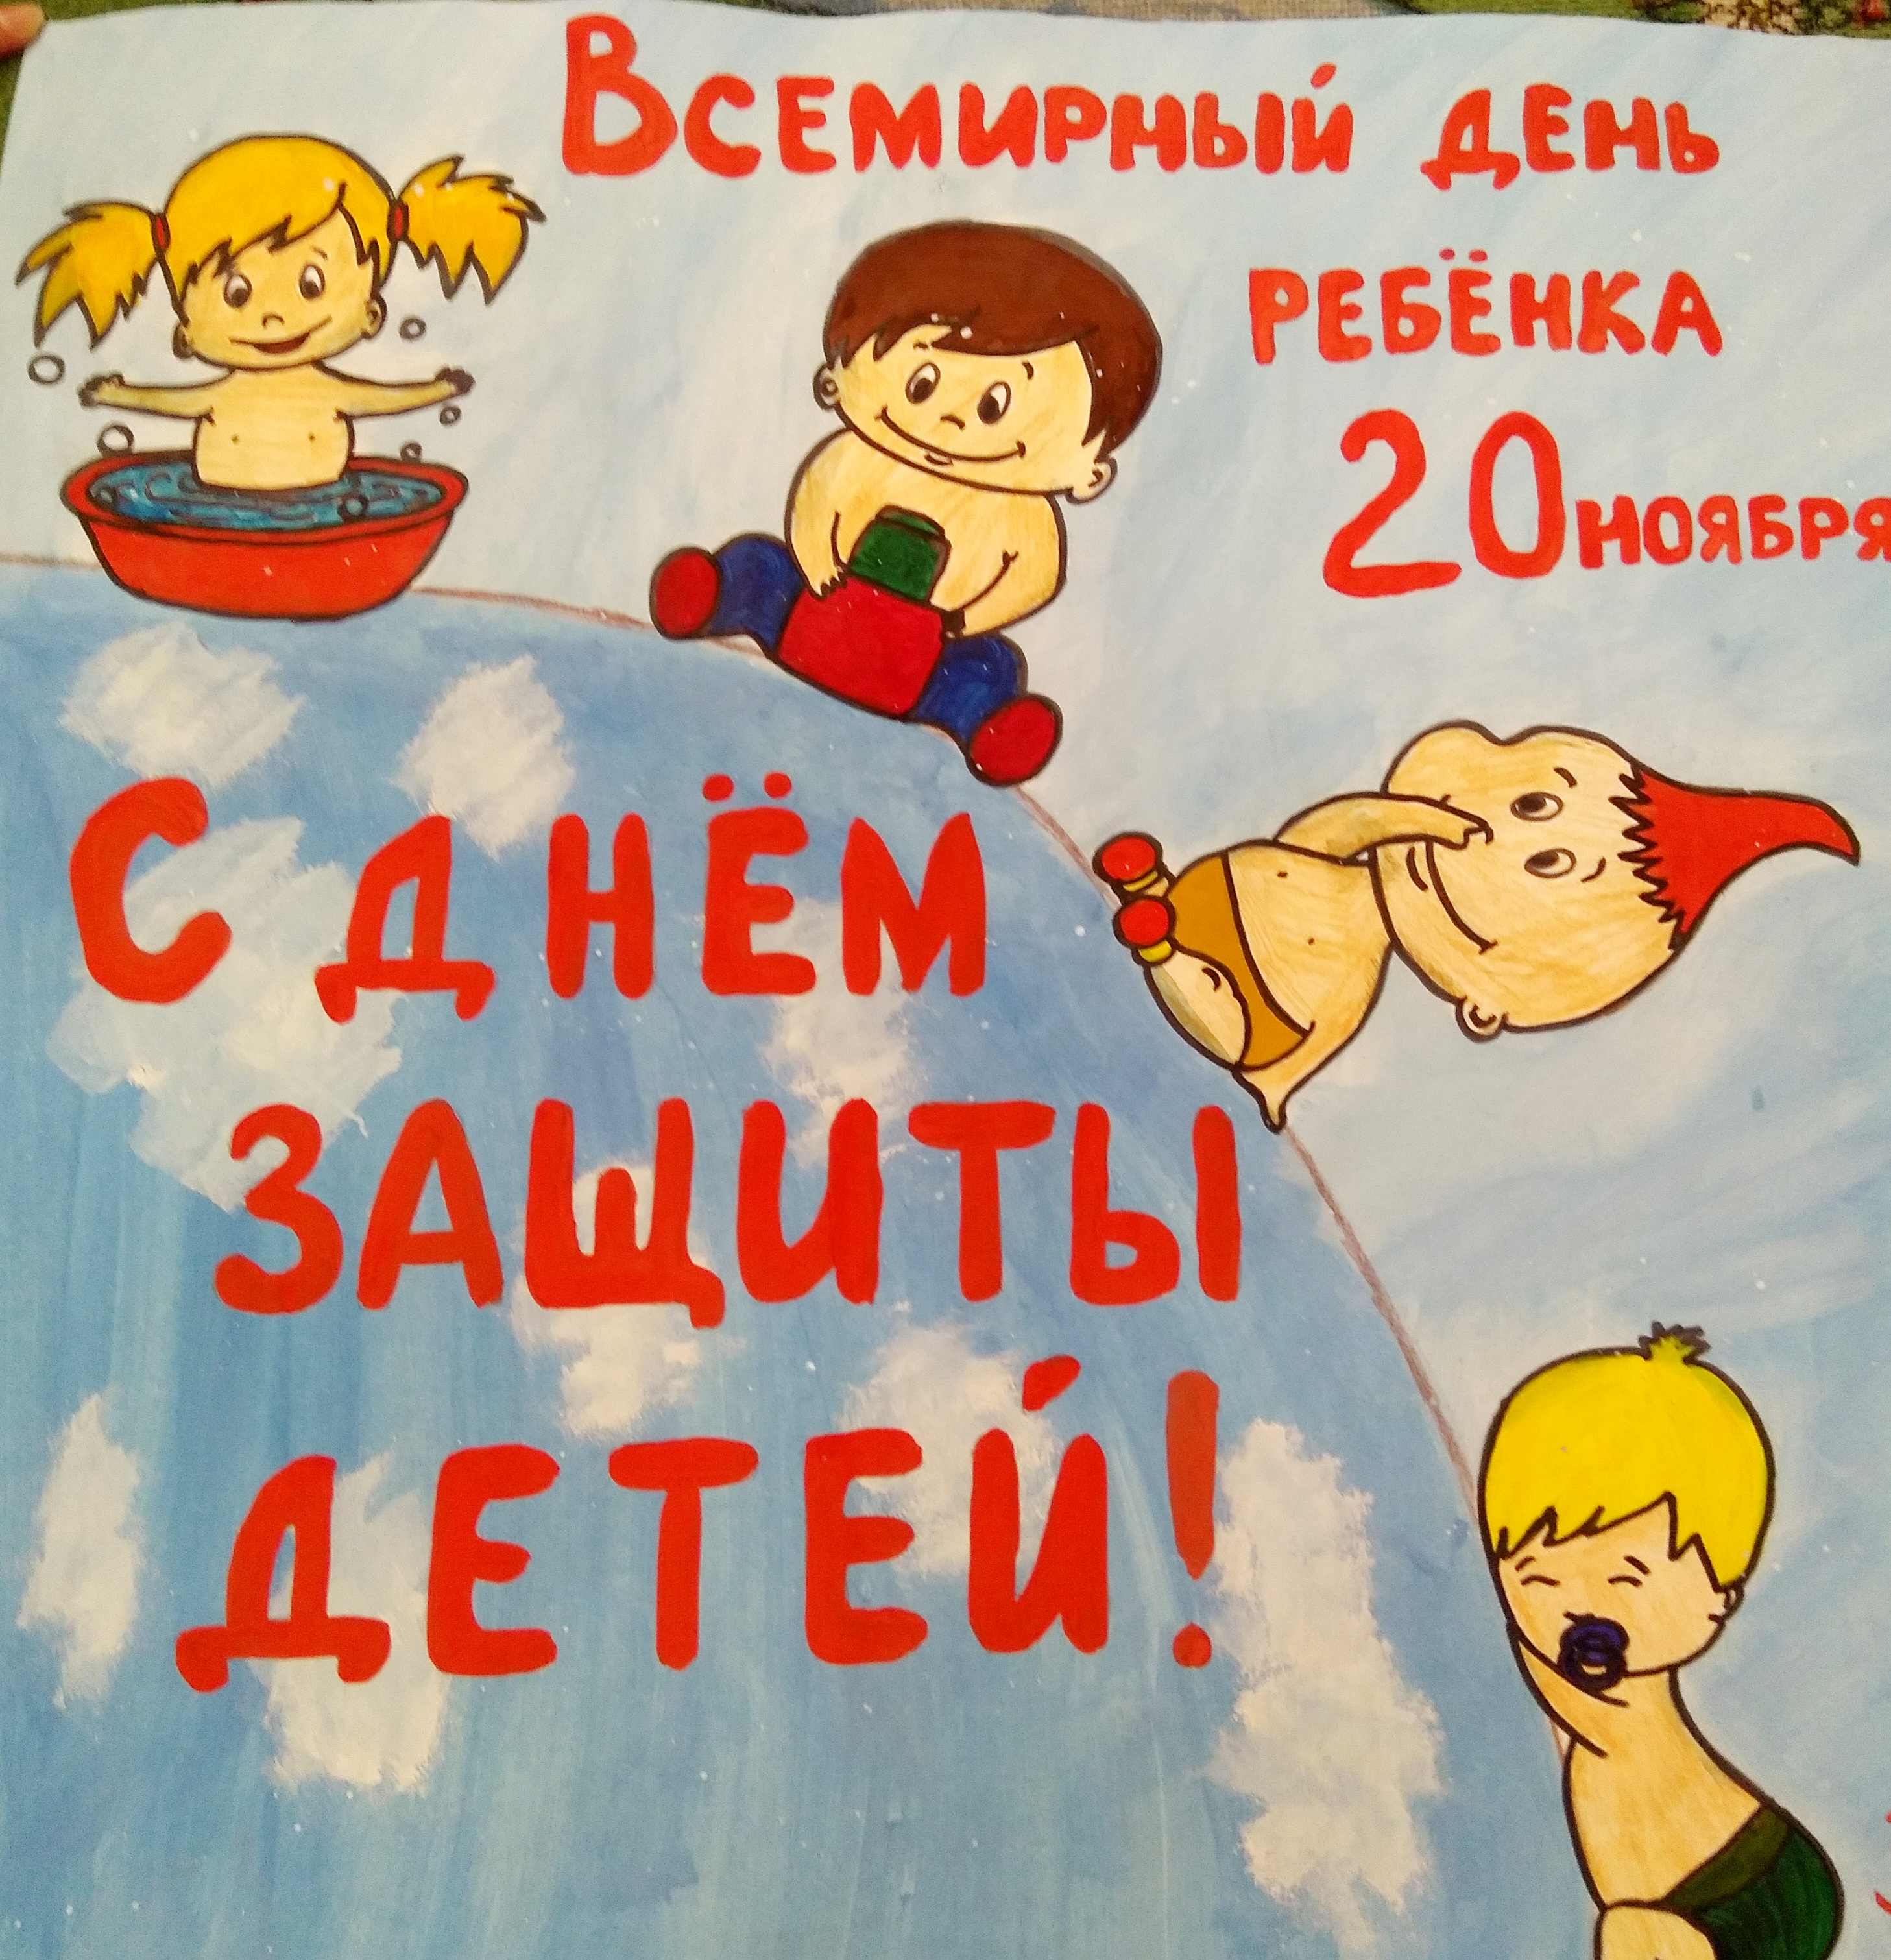 Всероссийский день правовой помощи детям плакат